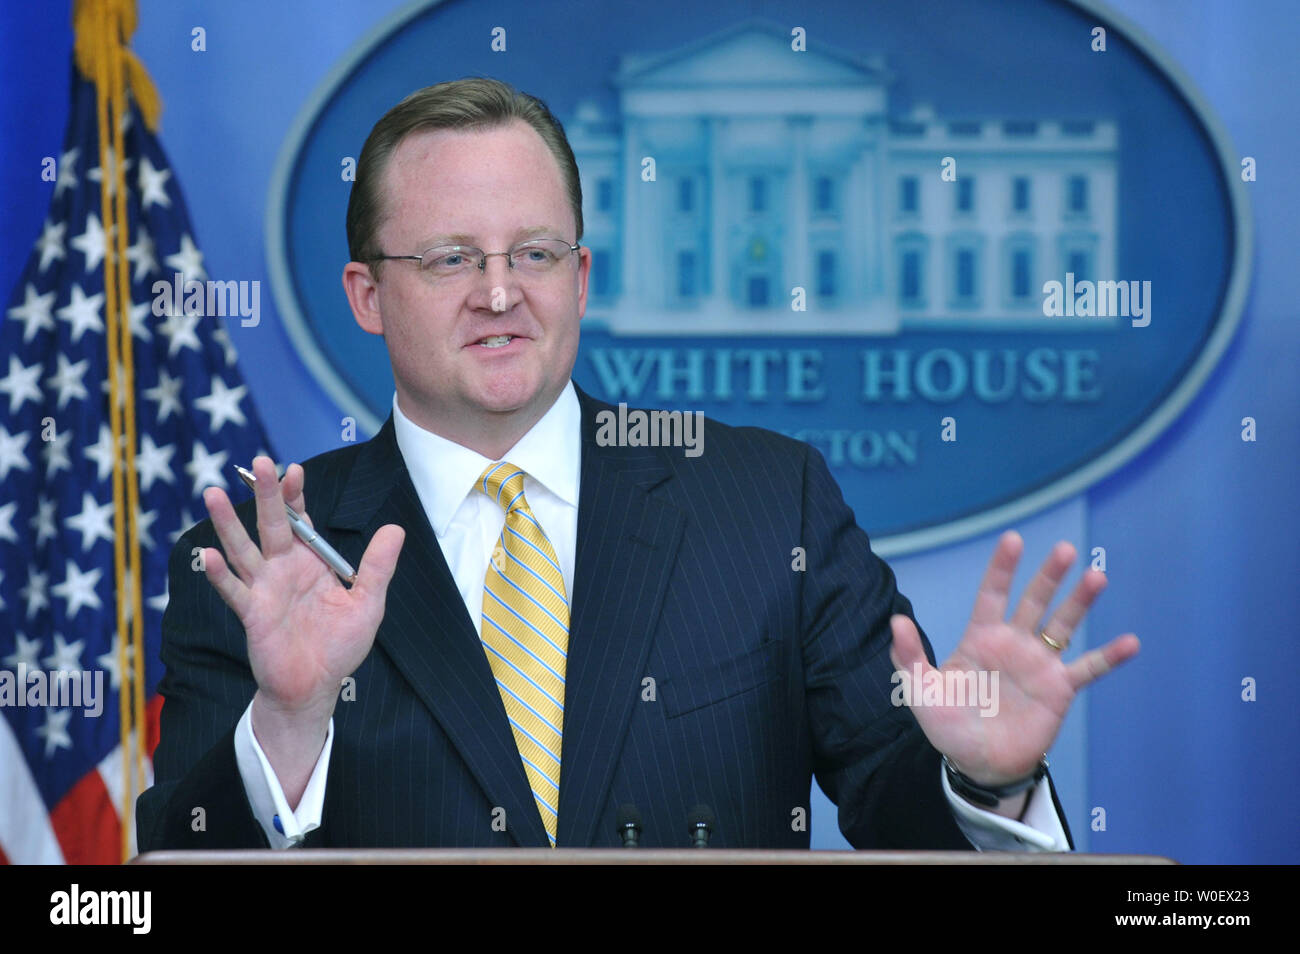 Der Pressesprecher des Weißen Hauses, Robert Gibbs, spricht über die Schweinepest während seiner täglichen Pressekonferenz im Weißen Haus in Washington am 27. April 2009 Influenza. (UPI Foto/Kevin Dietsch) Stockfoto